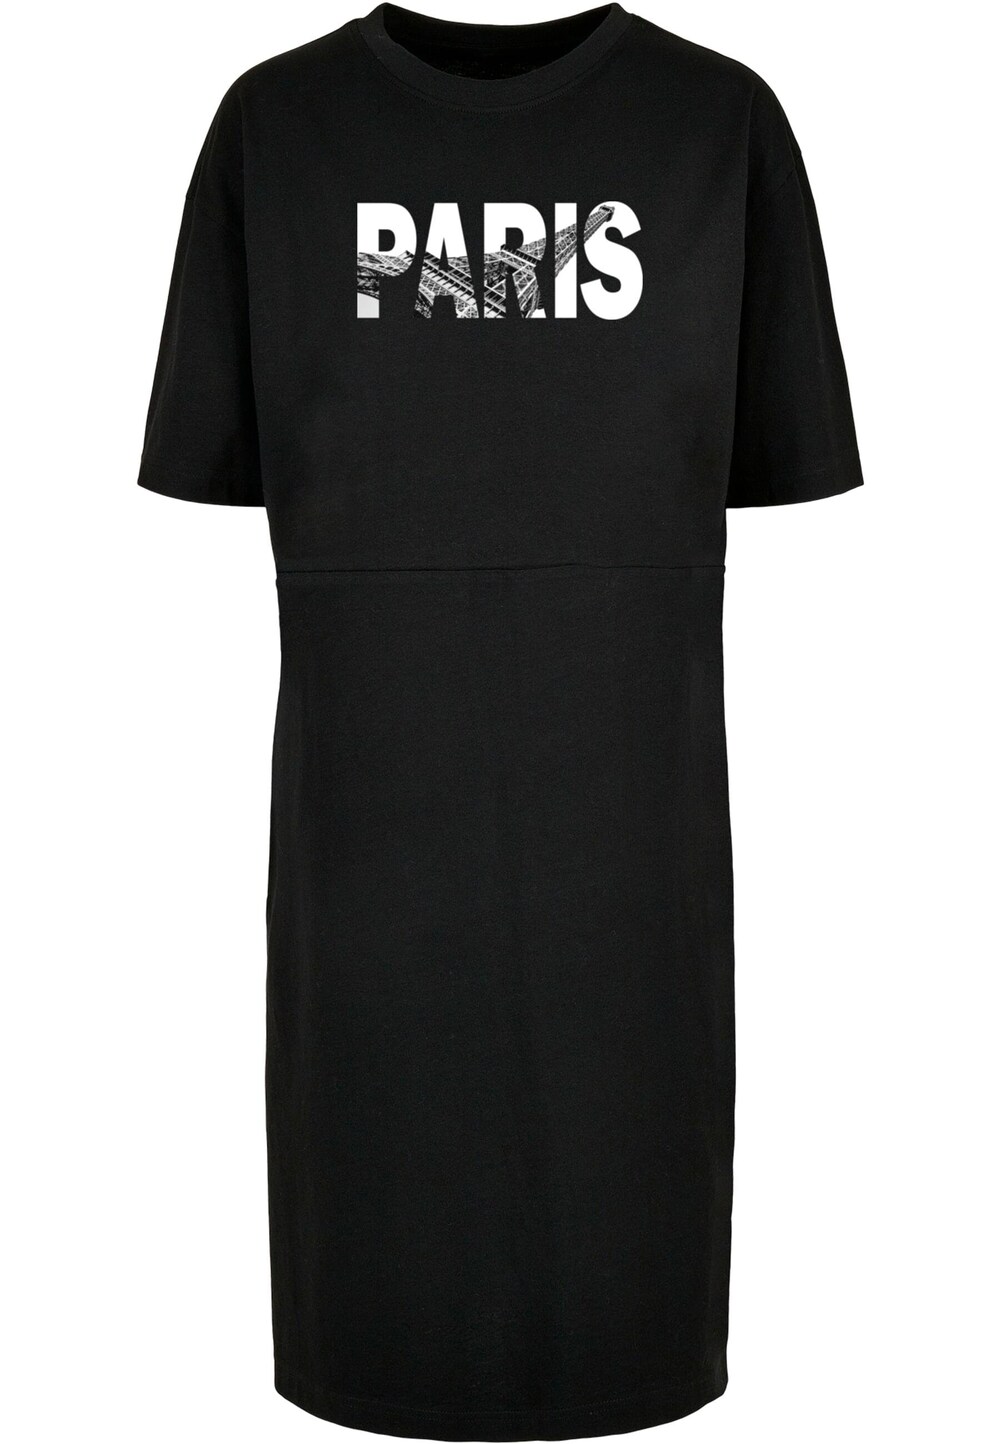 Платье Merchcode Paris Eiffel Tower, черный